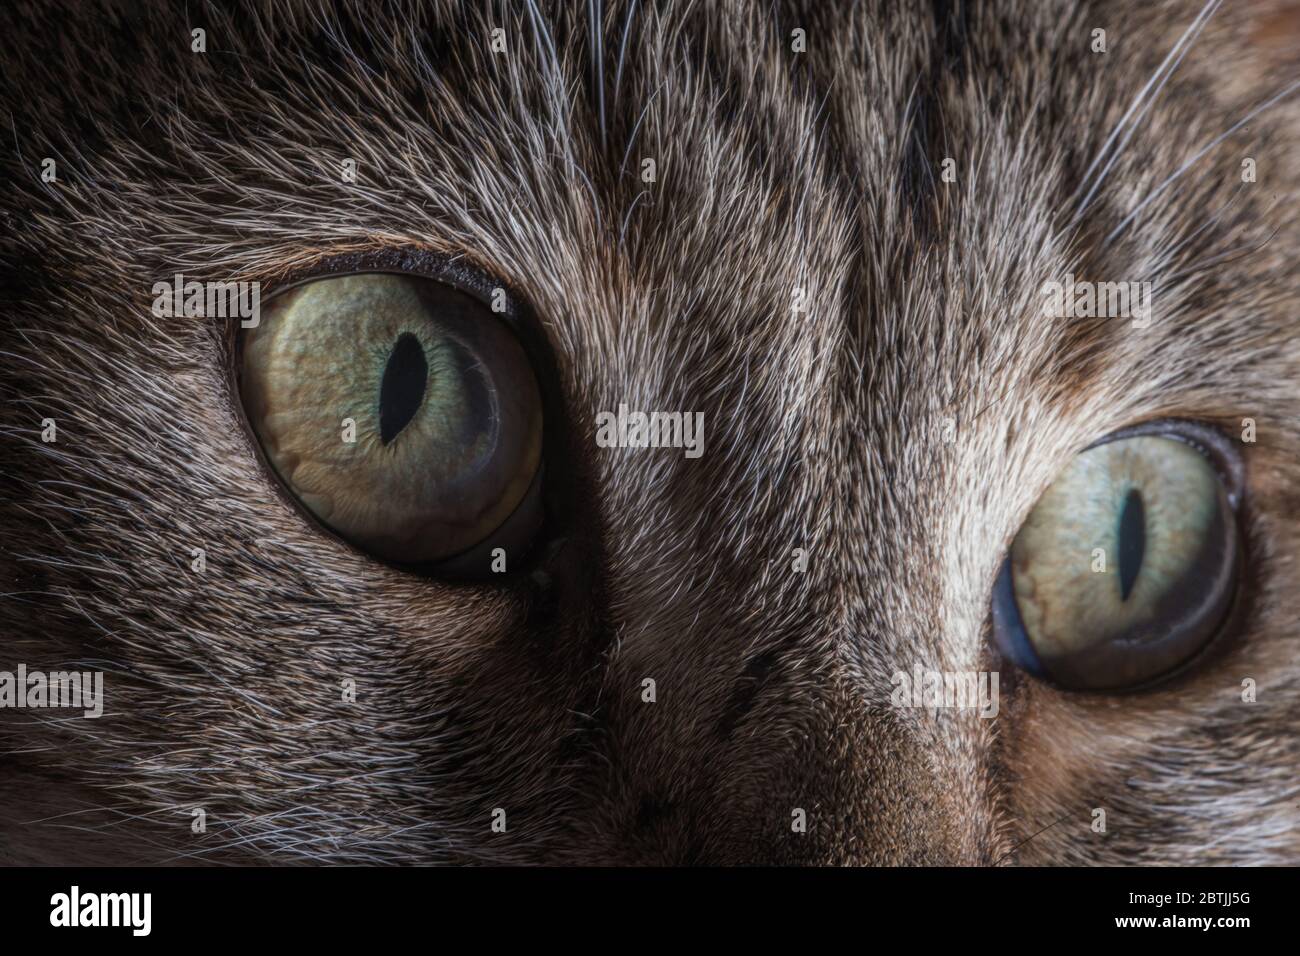 Thème animaux domestiques. Maison œil de chat détail macro photo. Le chat Felis Catus est une espèce domestique de petit mammifère carnivore. Banque D'Images